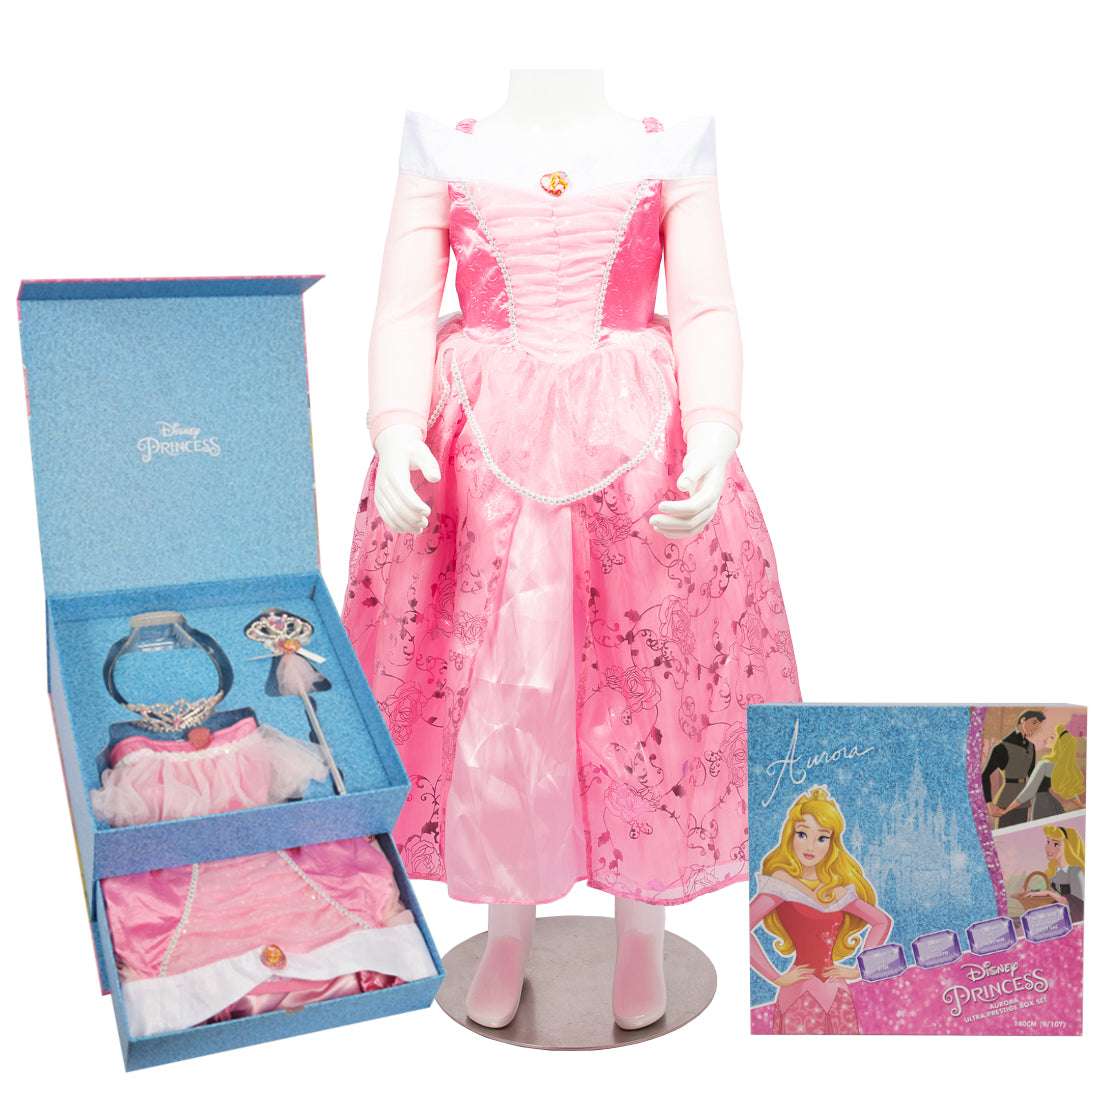 Child Aurora Ultra Prestige Costume Box Set - Party Centre